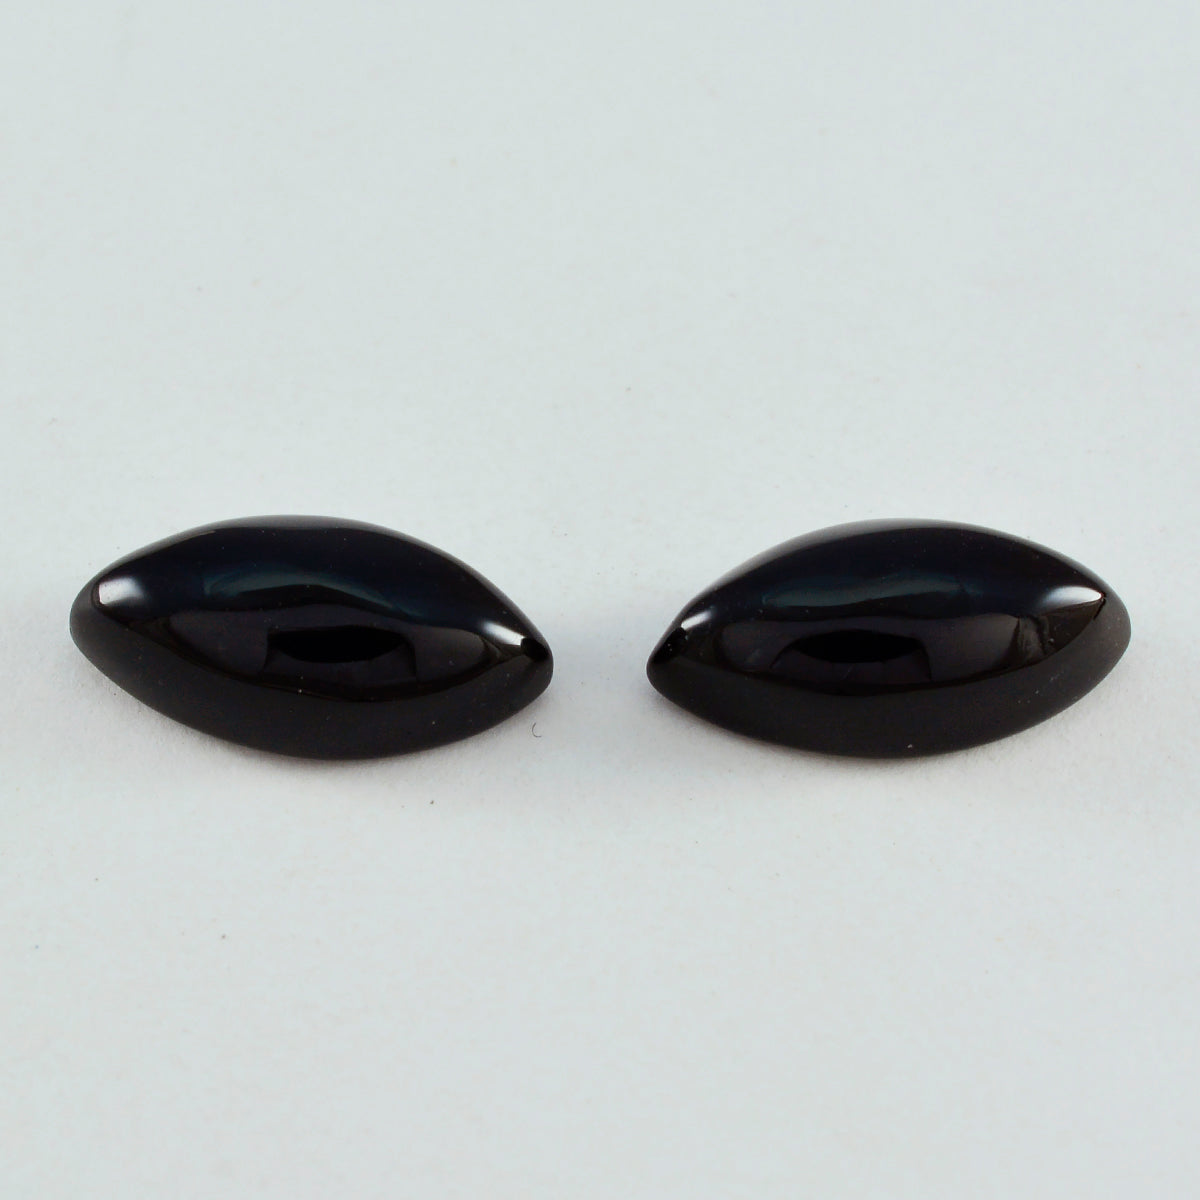 Riyogems 1pc cabochon onyx noir 9x18mm forme marquise belles pierres précieuses en vrac de qualité